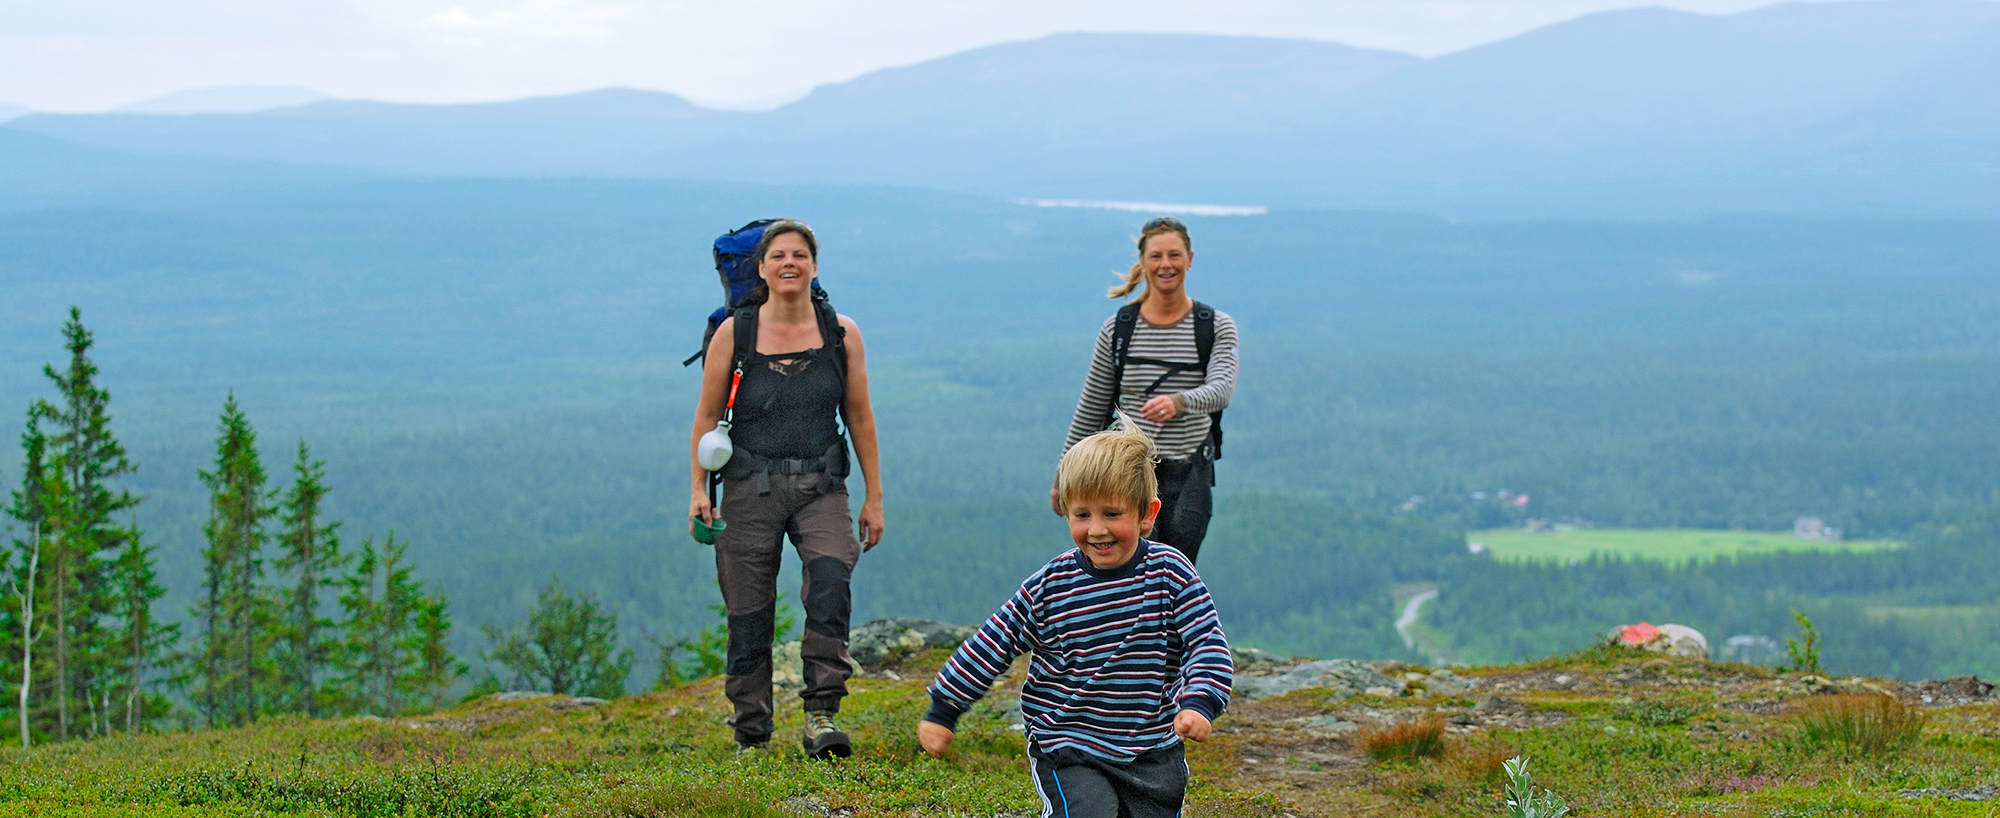 Vandring med barn längs Björnbacksturen. En fjällupplevelse i världsklass i Södra Årefjällen.